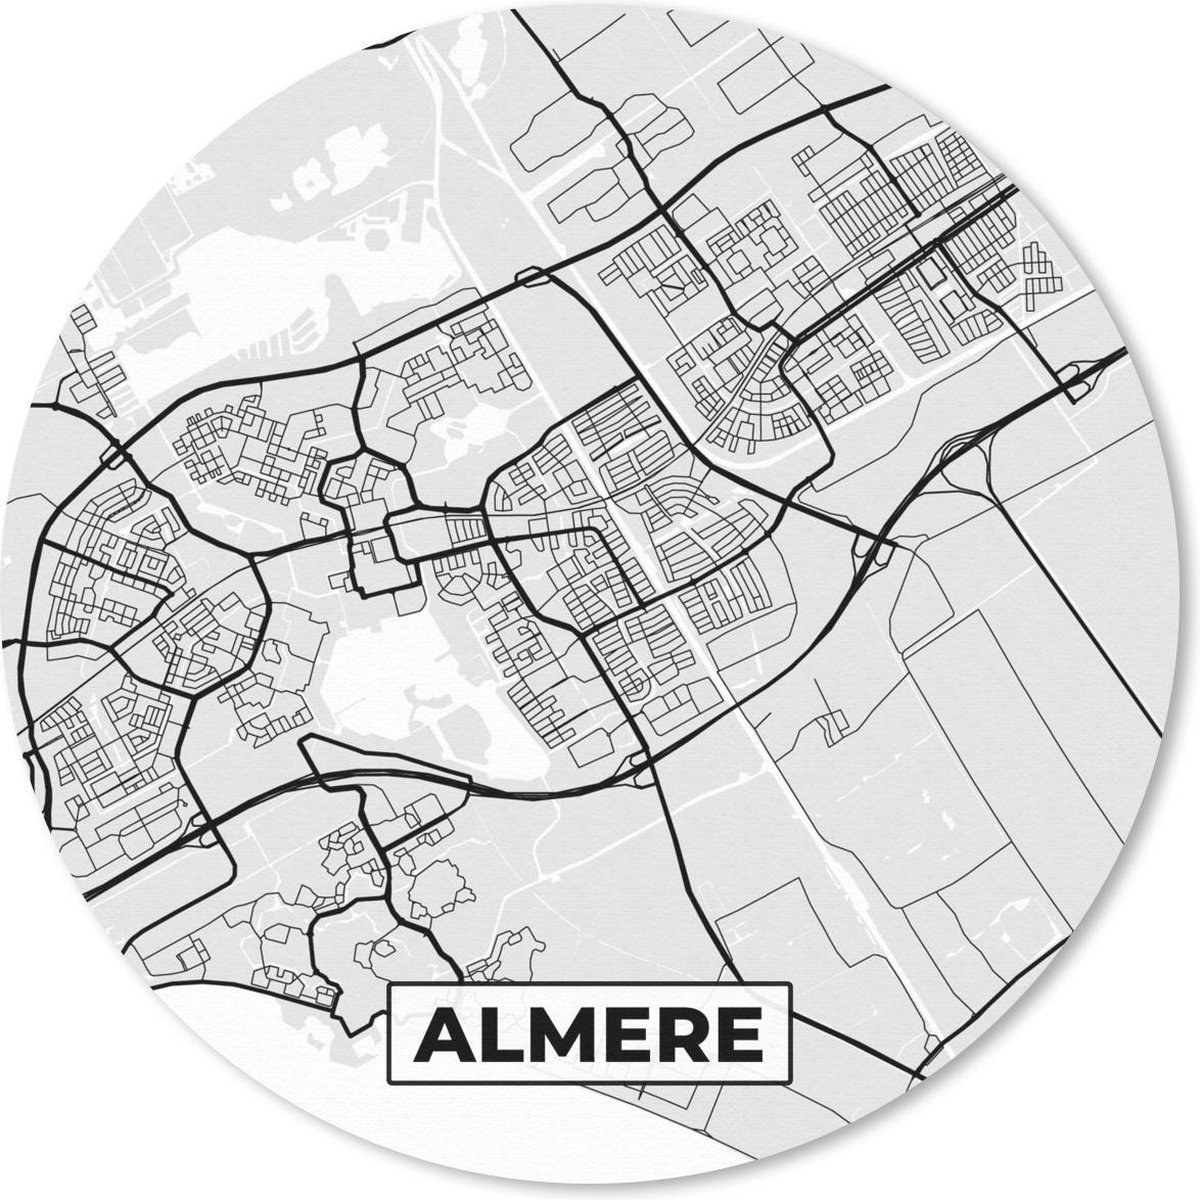 Muismat - Mousepad - Rond - Stadskaart - Almere - Grijs - Wit - 30x30 cm - Ronde muismat